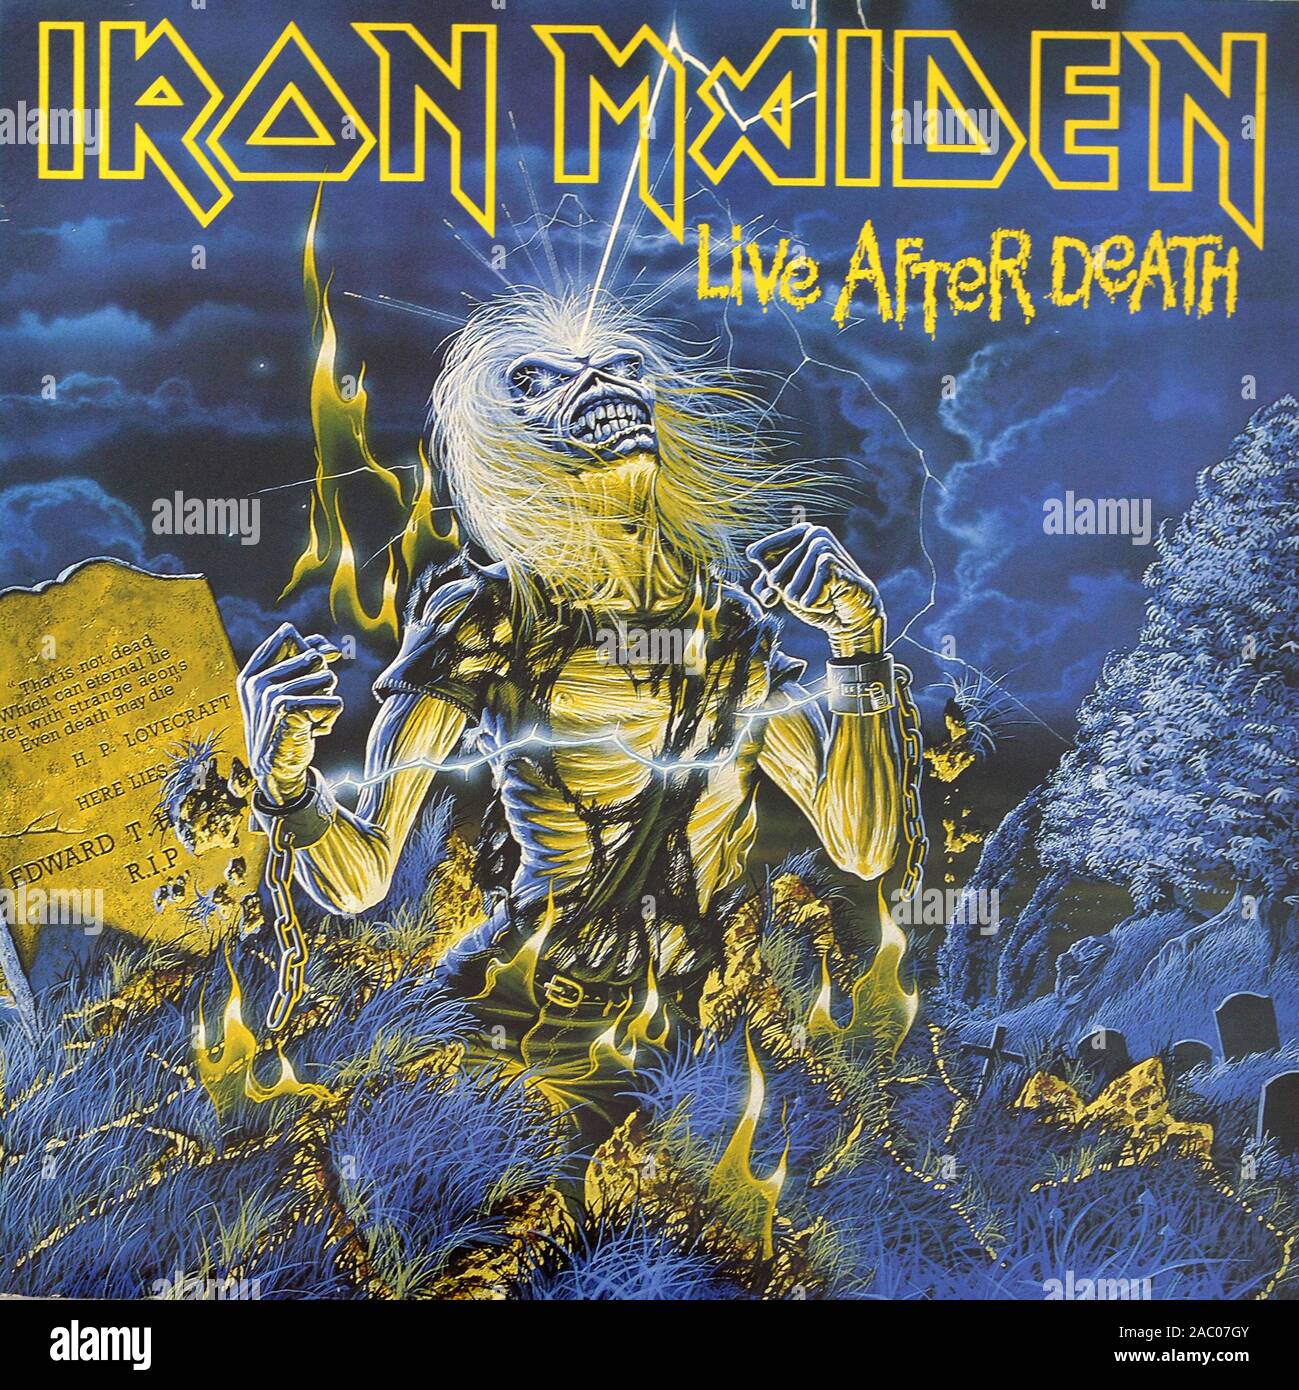 Iron Maiden Live dopo la morte - Vintage vinile copertina album Foto Stock